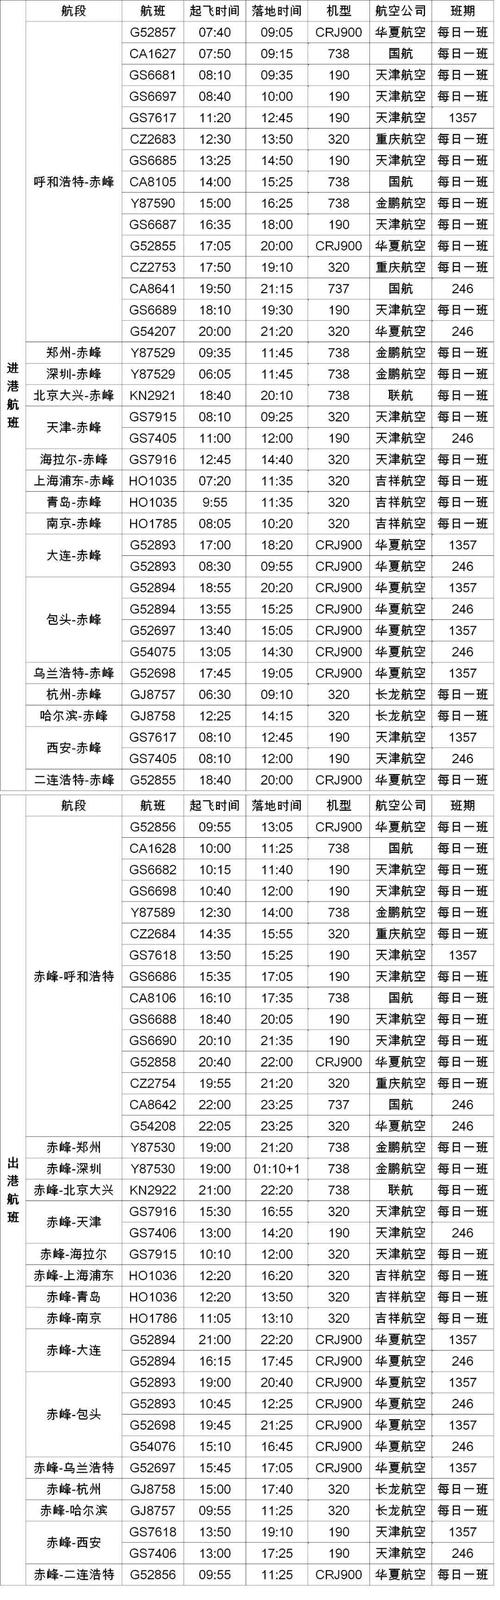 航班保持每日10班以上,另外目前可直达城市包括上海,北京,天津,郑州